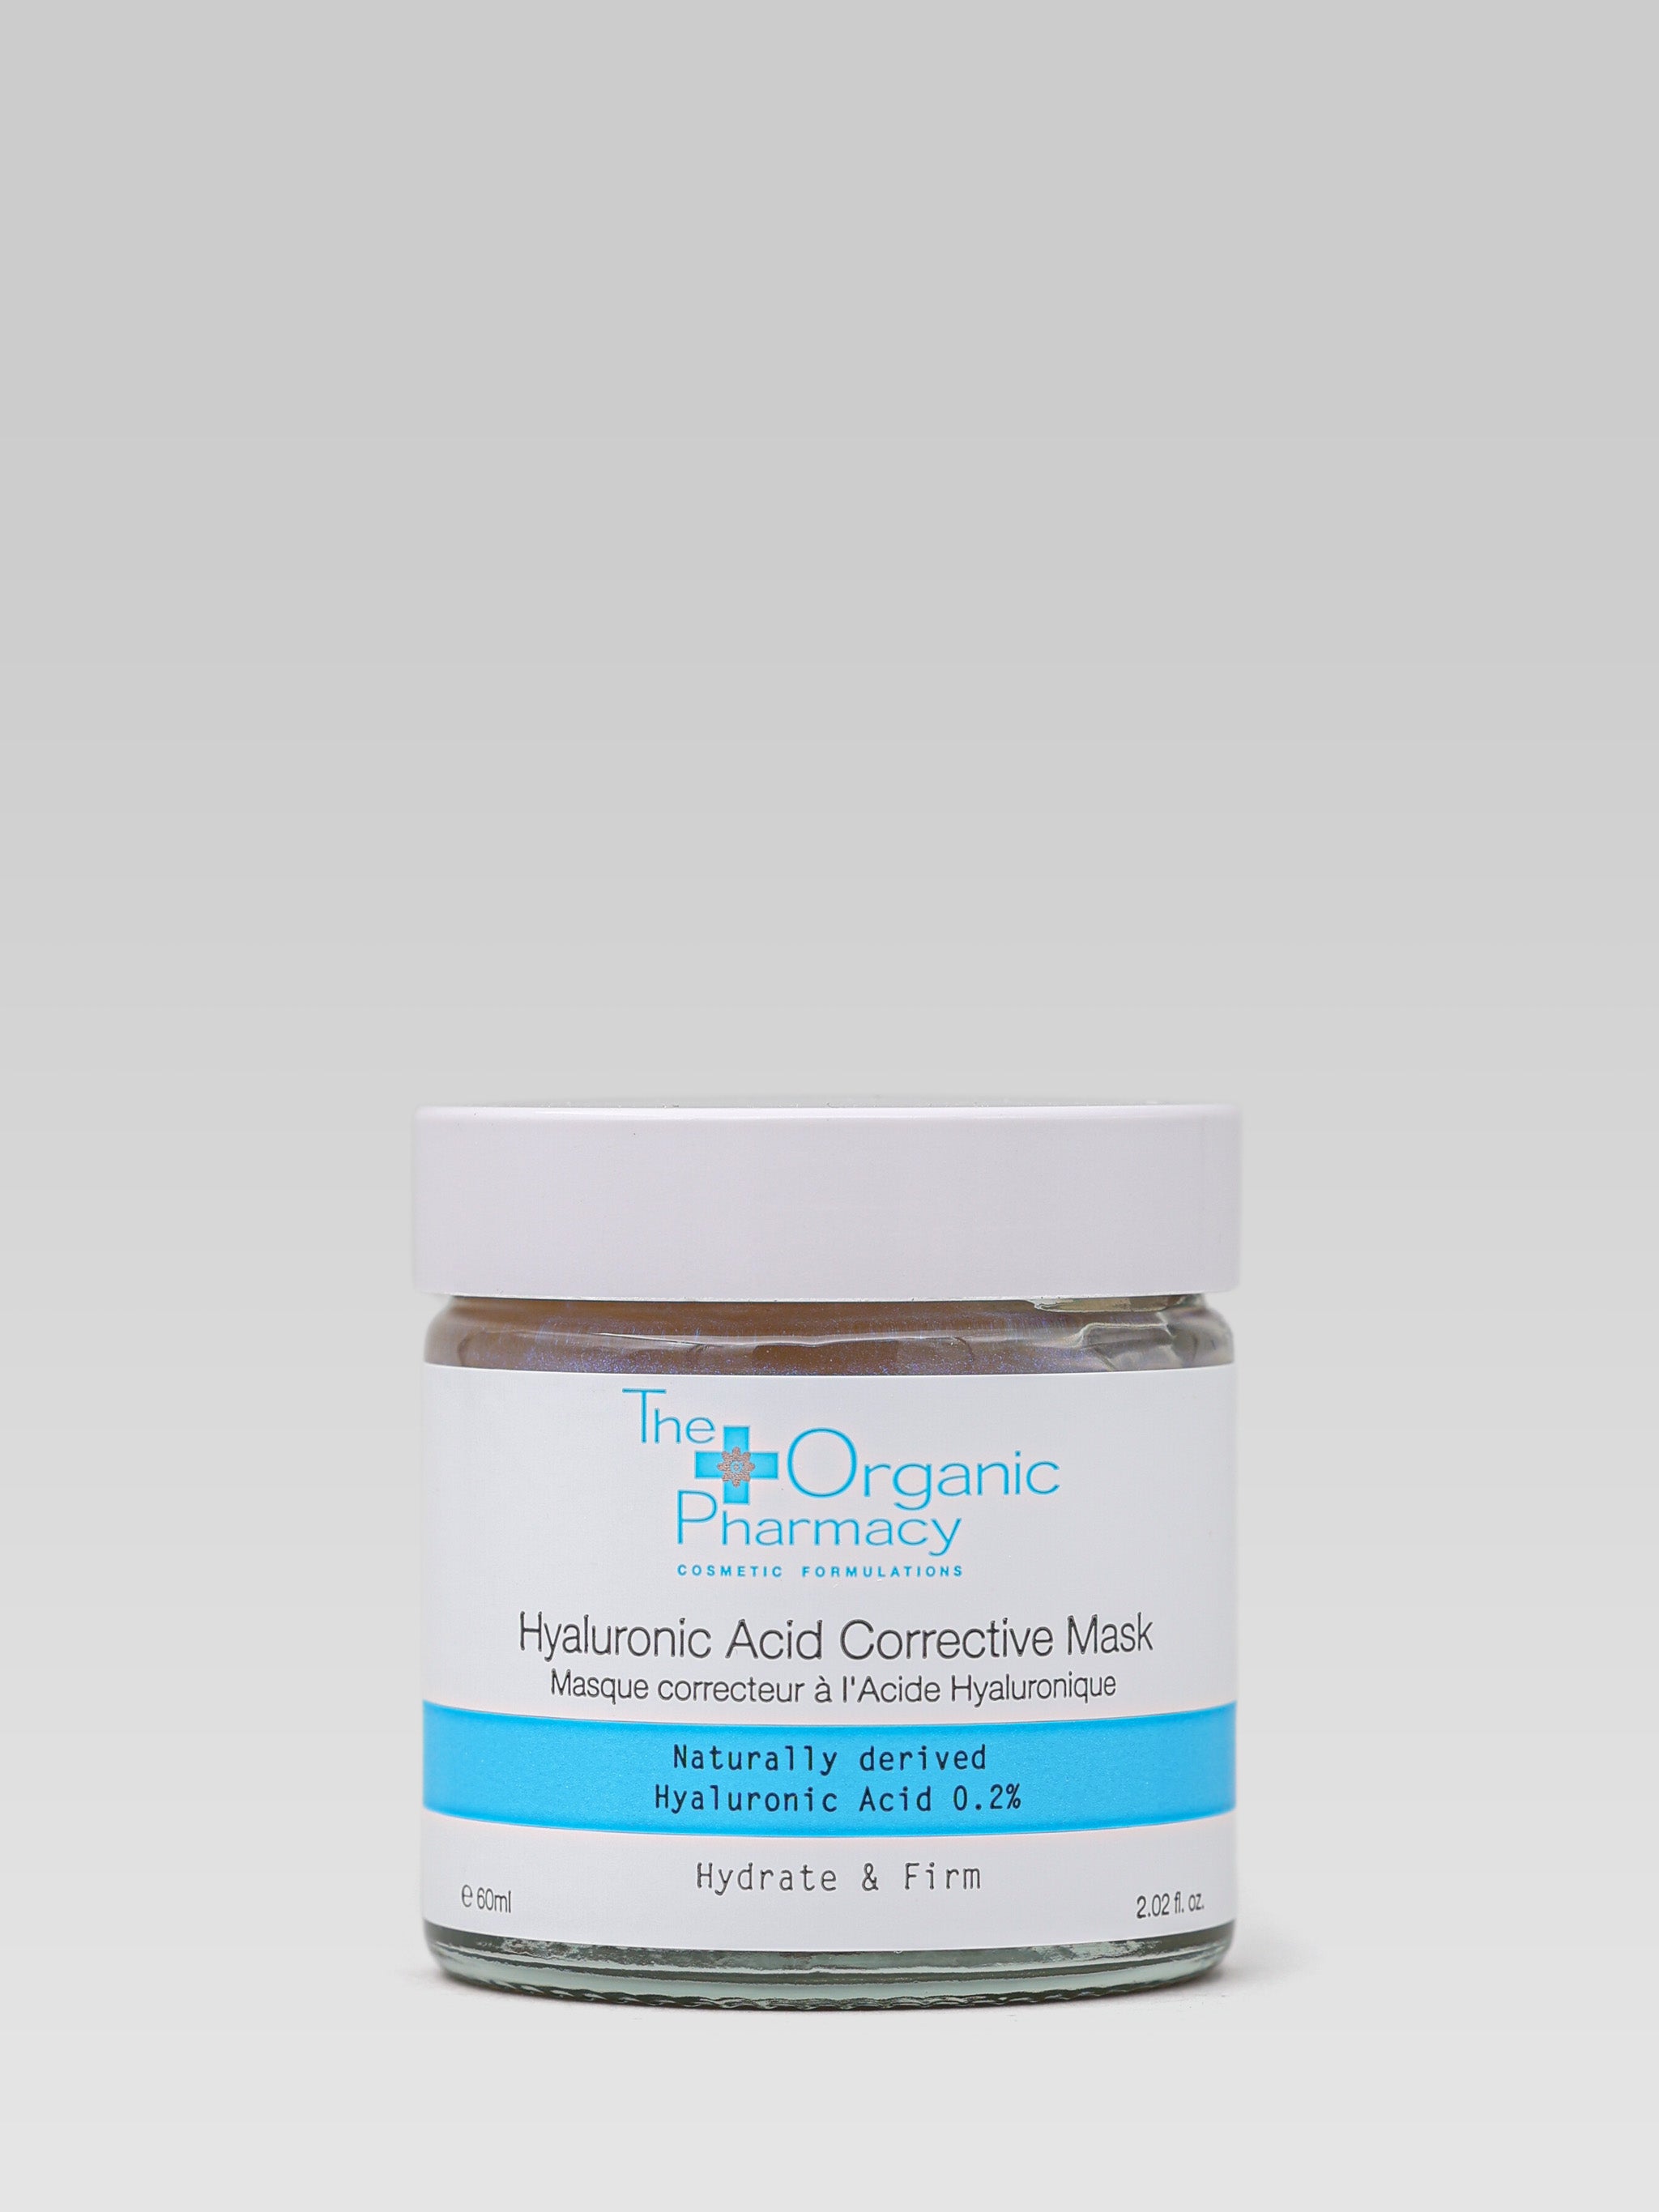 The Organic Pharmacy Hyaluronic Acid Corrective Mask product shot